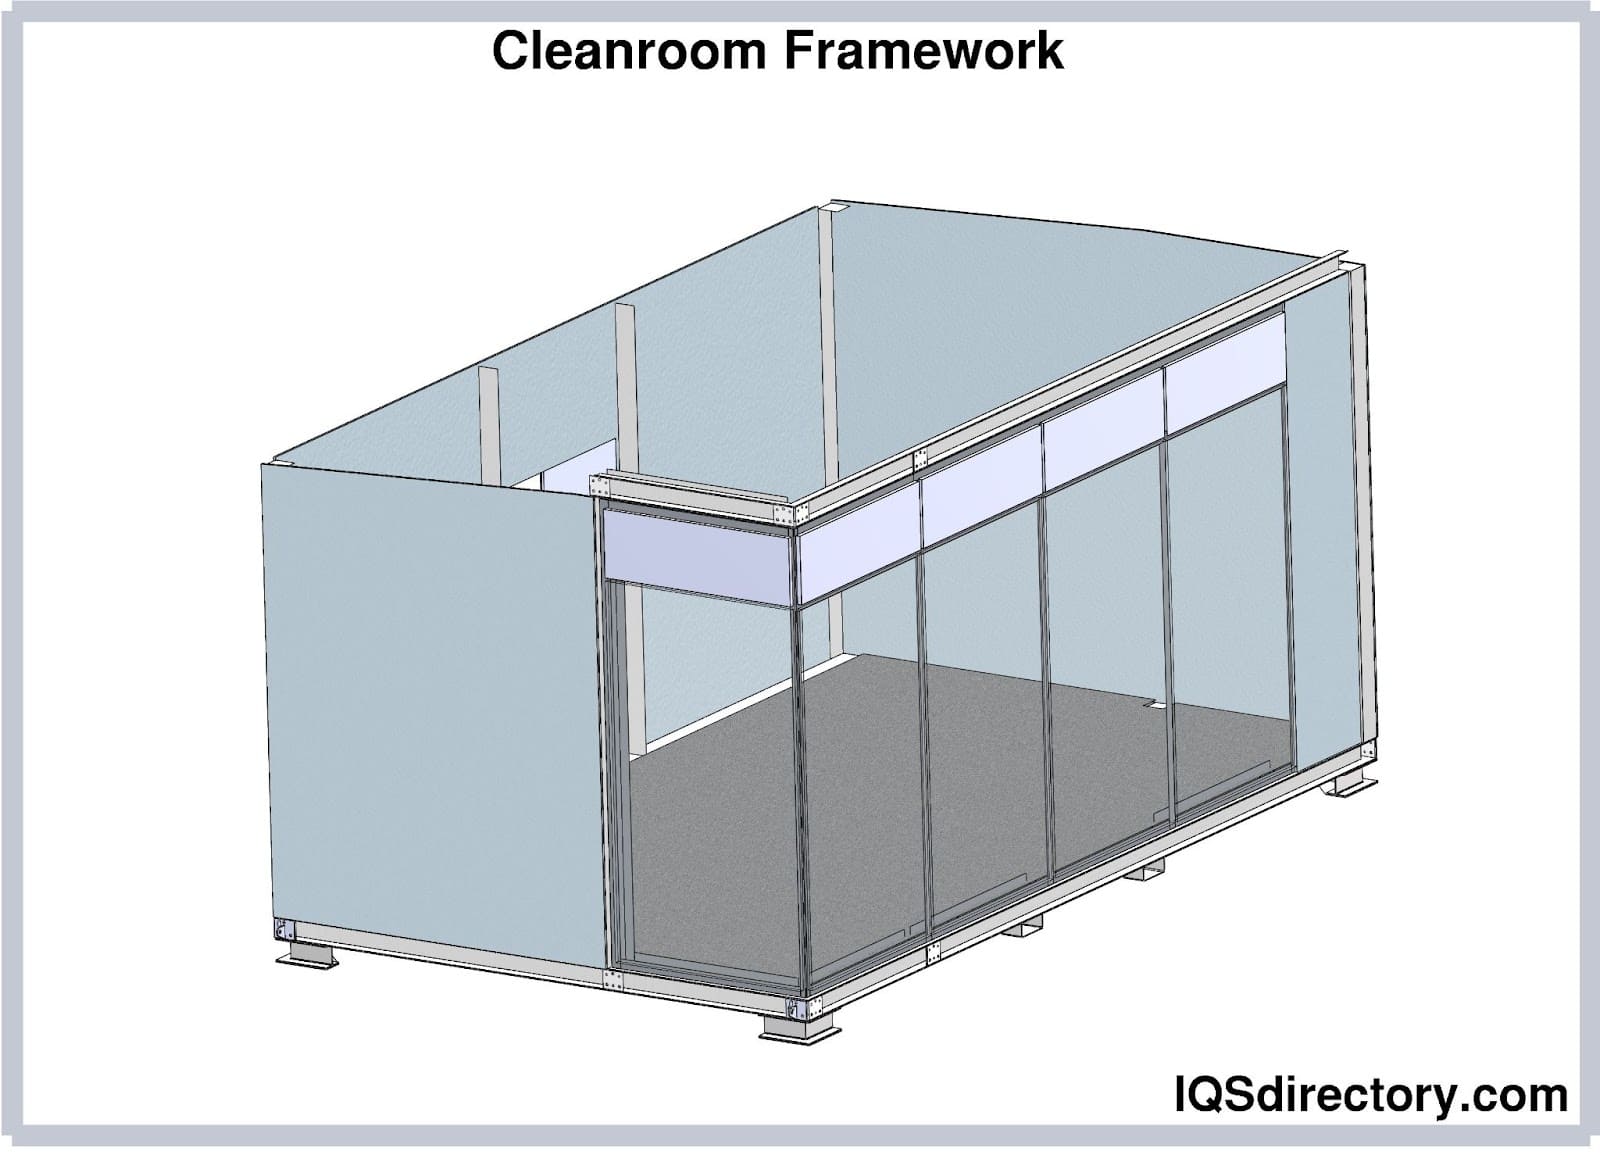 Cleanroom Framework